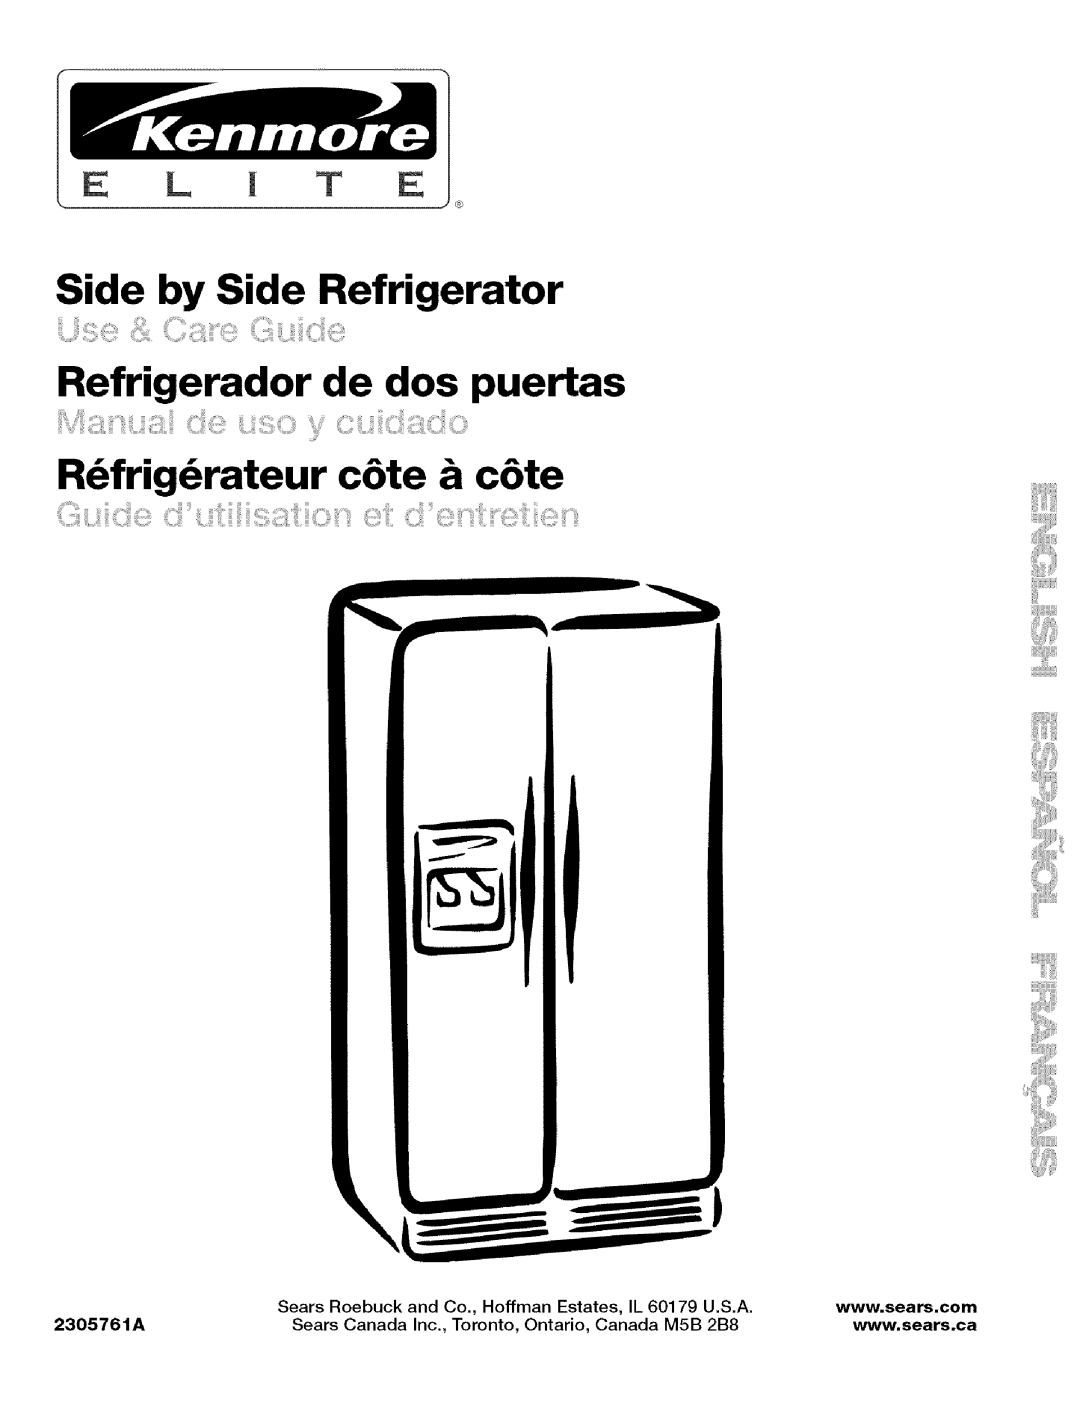 Kenmore 2305761A manual Side by Side Refrigerator, Refrigerador de dos puertas, R_frig_rateur c6te & c6te, Sears Roebuck 